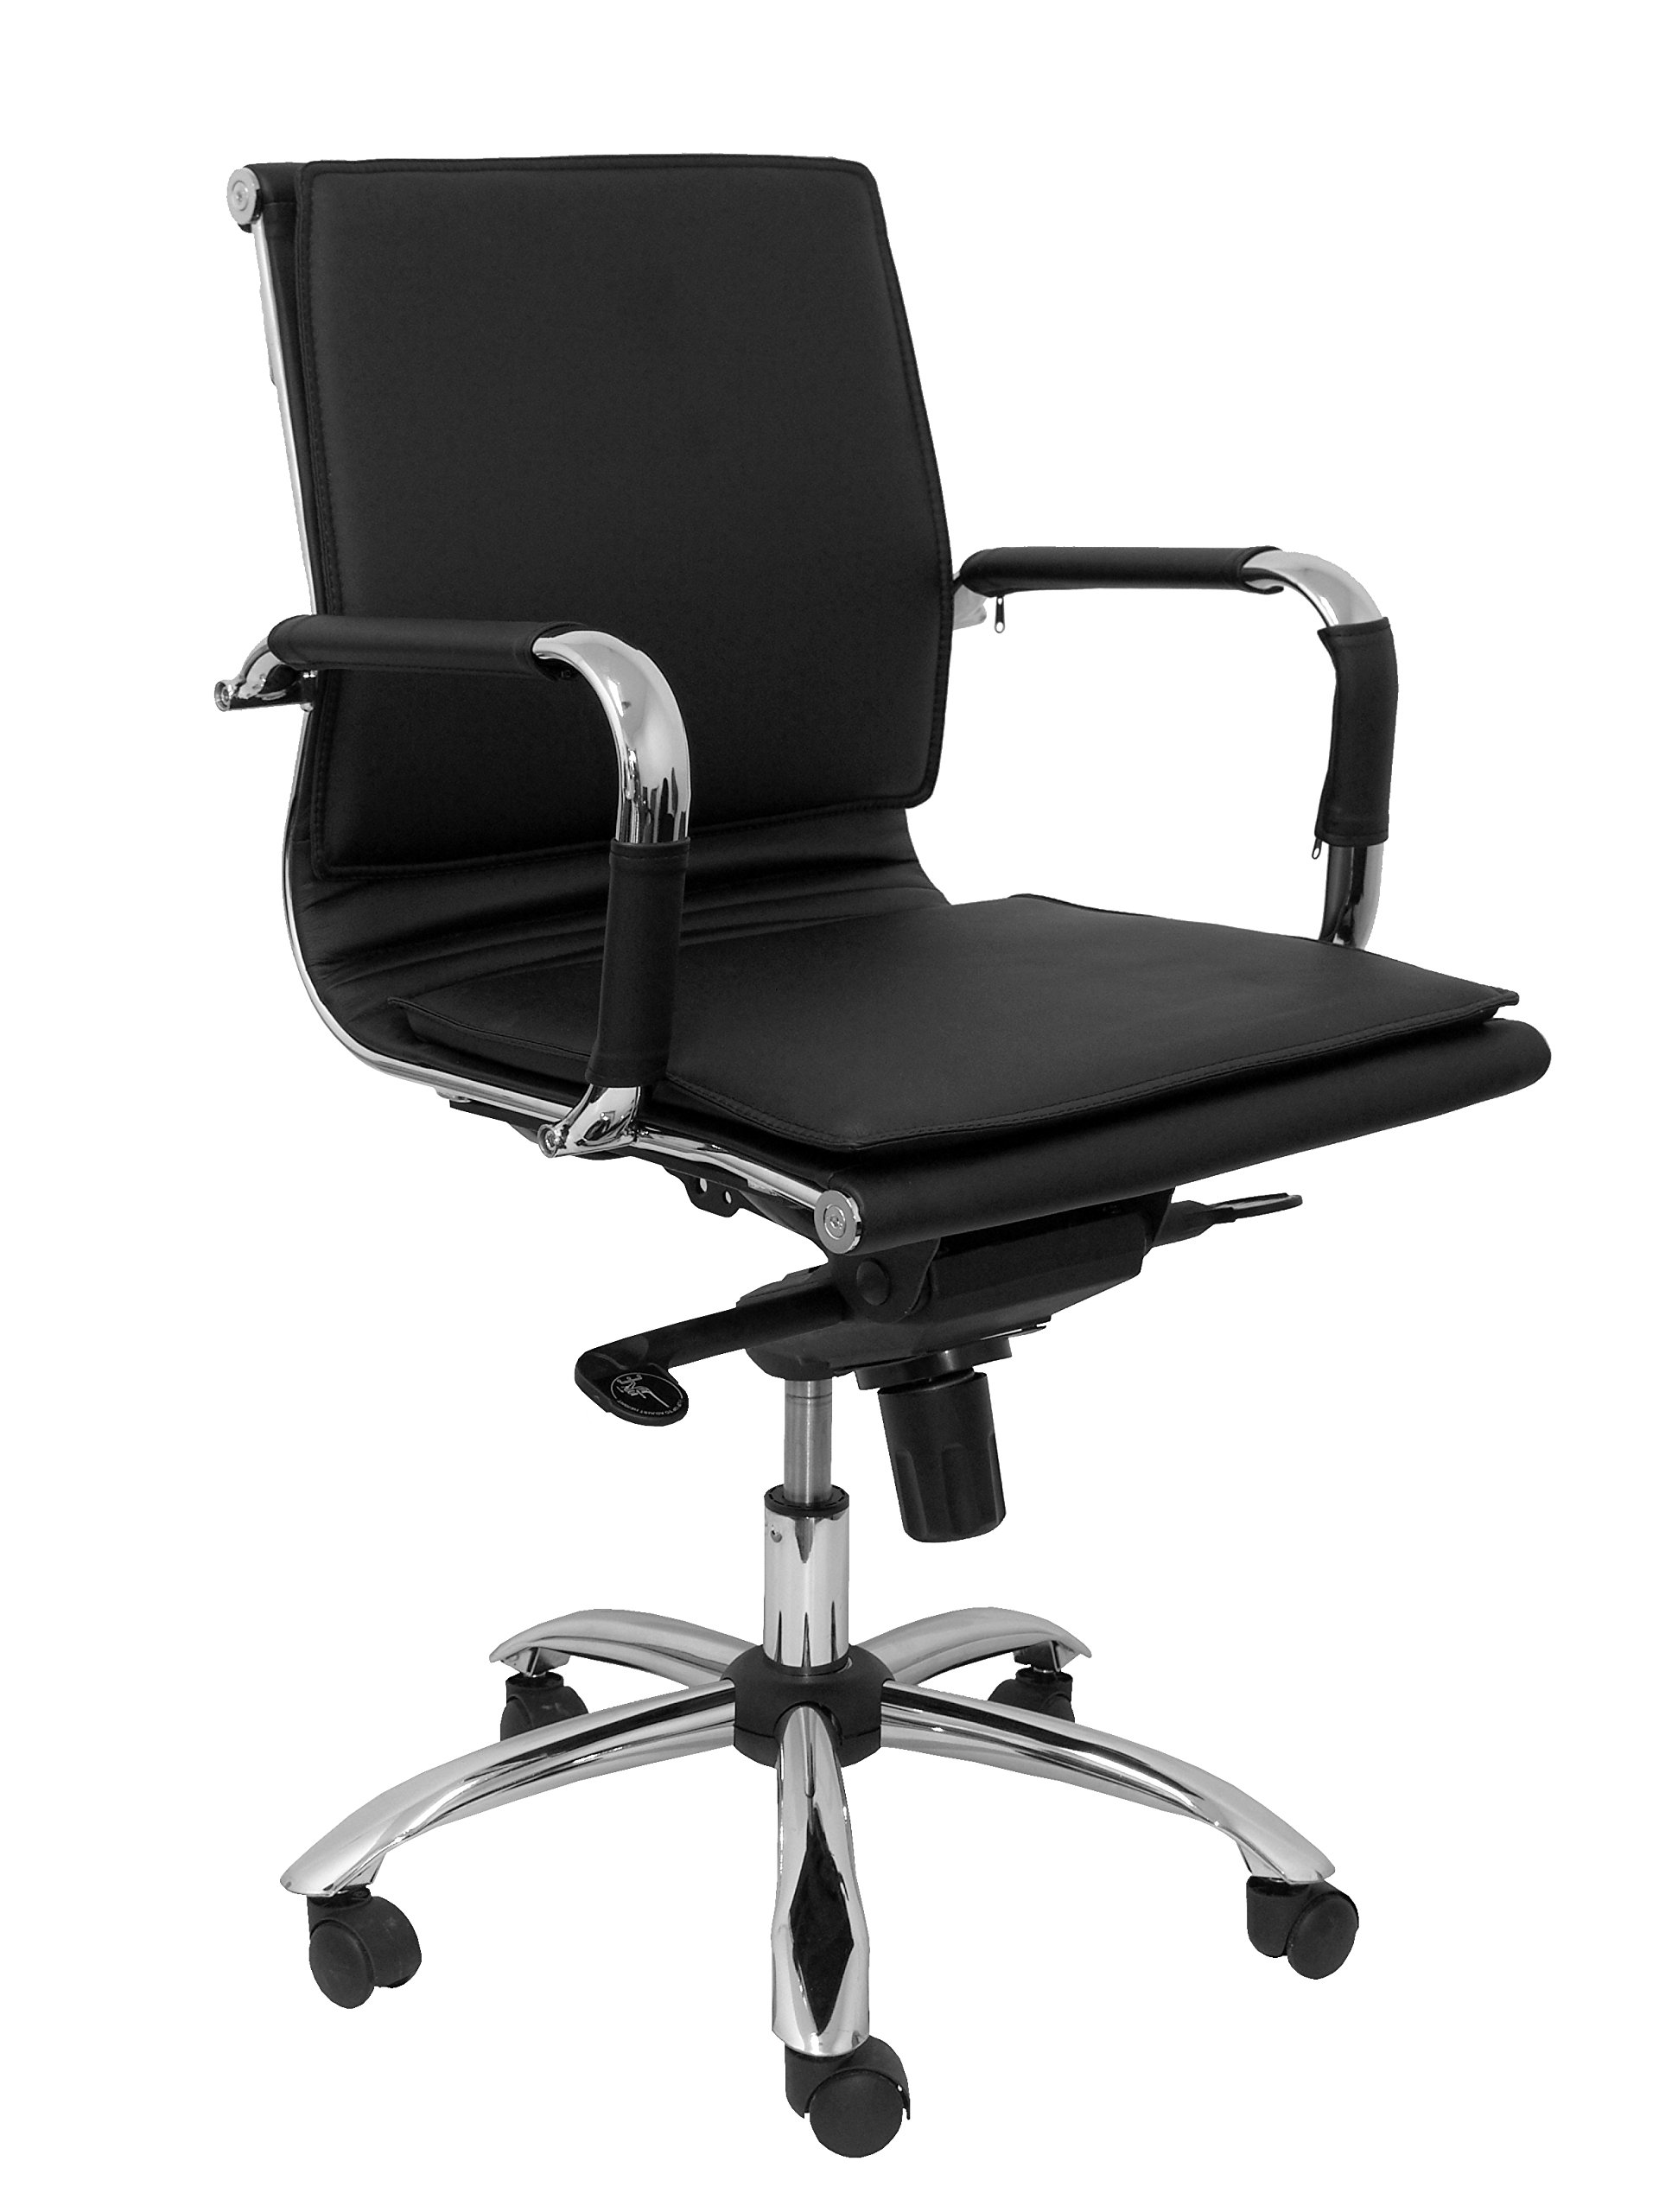 Piqueras y Crespo Modell ALCARAZ – Bürostuhl, ergonomisch, mit Mechanismus Umkippen, mehrere Liegepositionen – Sitz und Rückenlehne aus Kunstleder schwarz